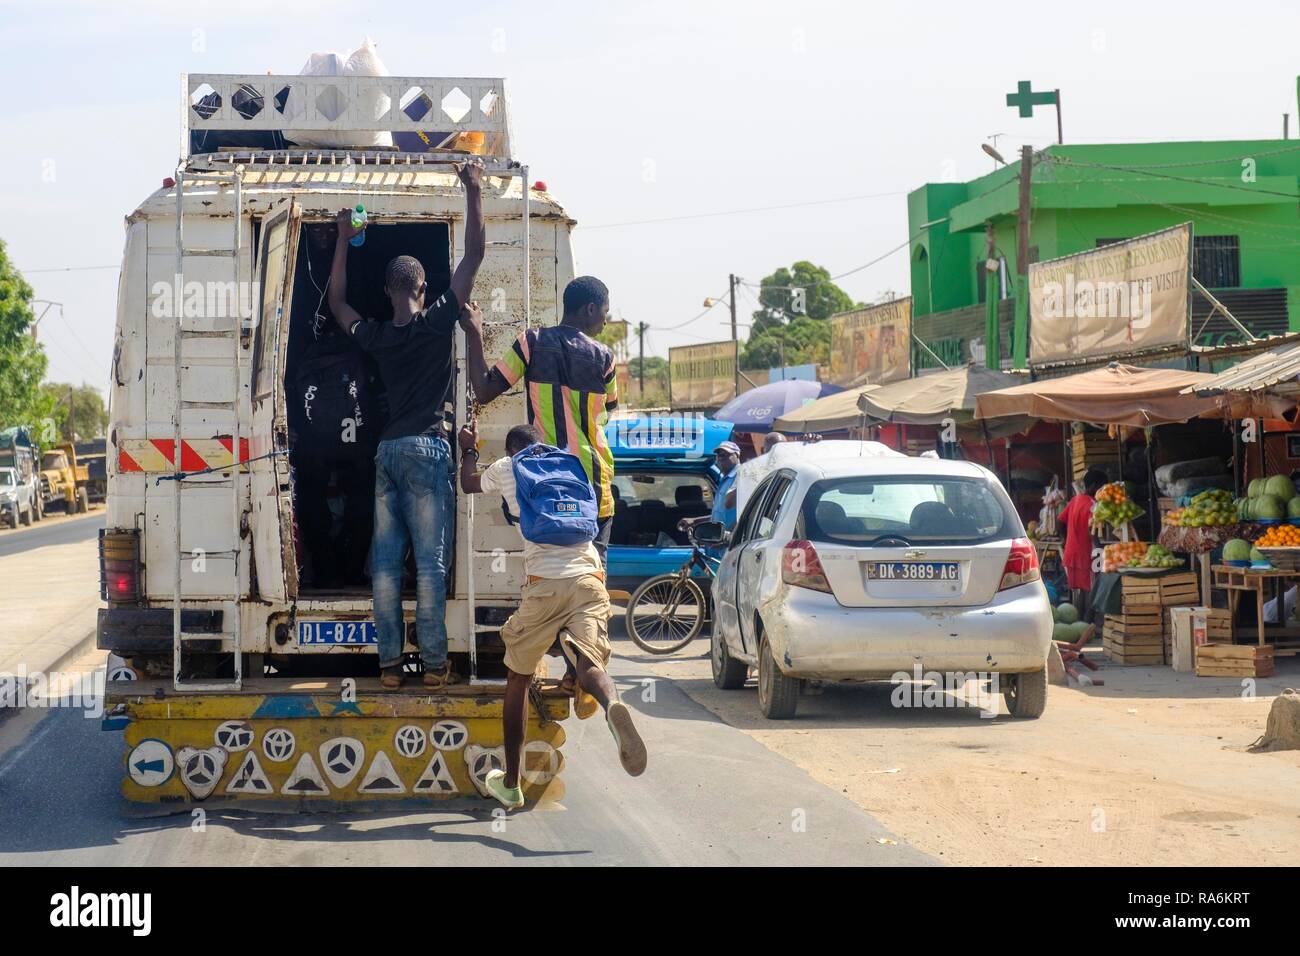 L'homme saute sur un bus, Dakar, Sénégal Banque D'Images